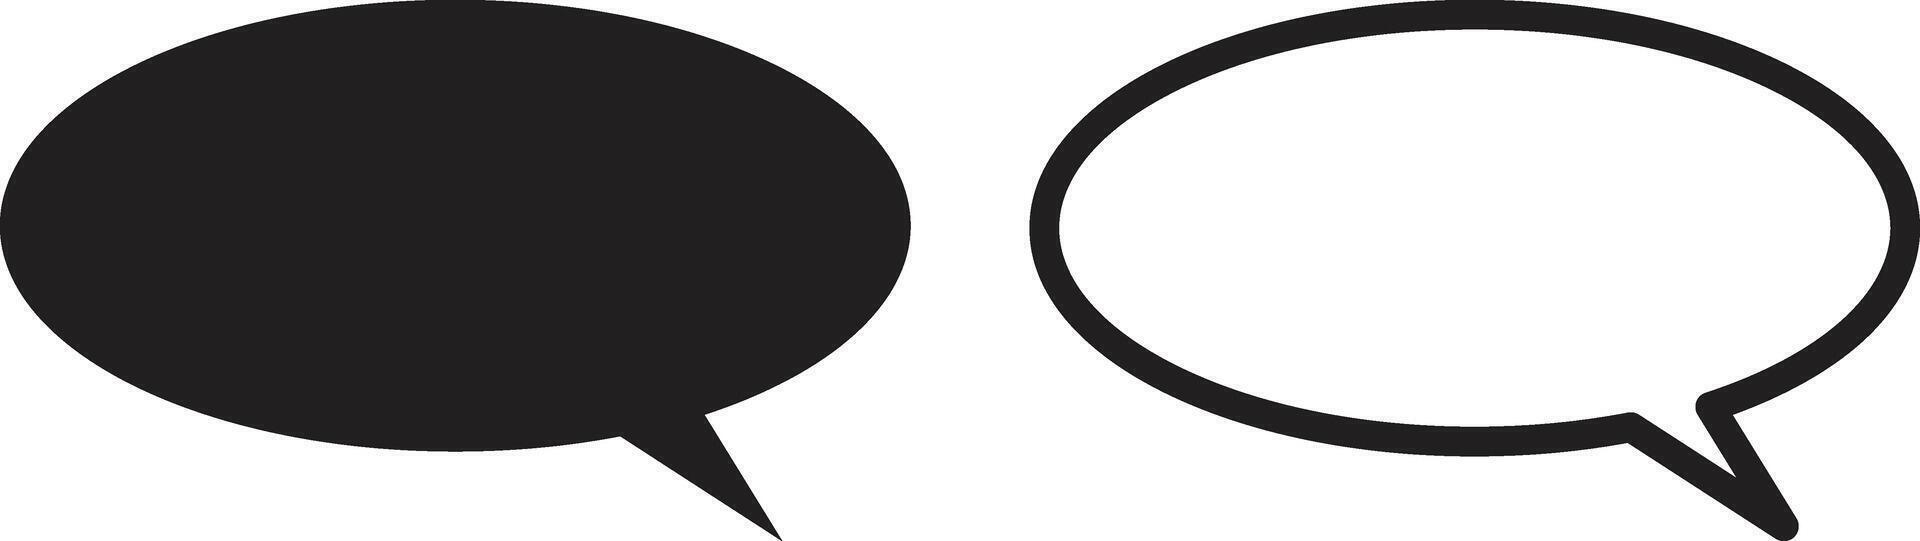 oval Tal bubbla ikon uppsättning i två stilar isolerat på vit bakgrund . vektor illustration